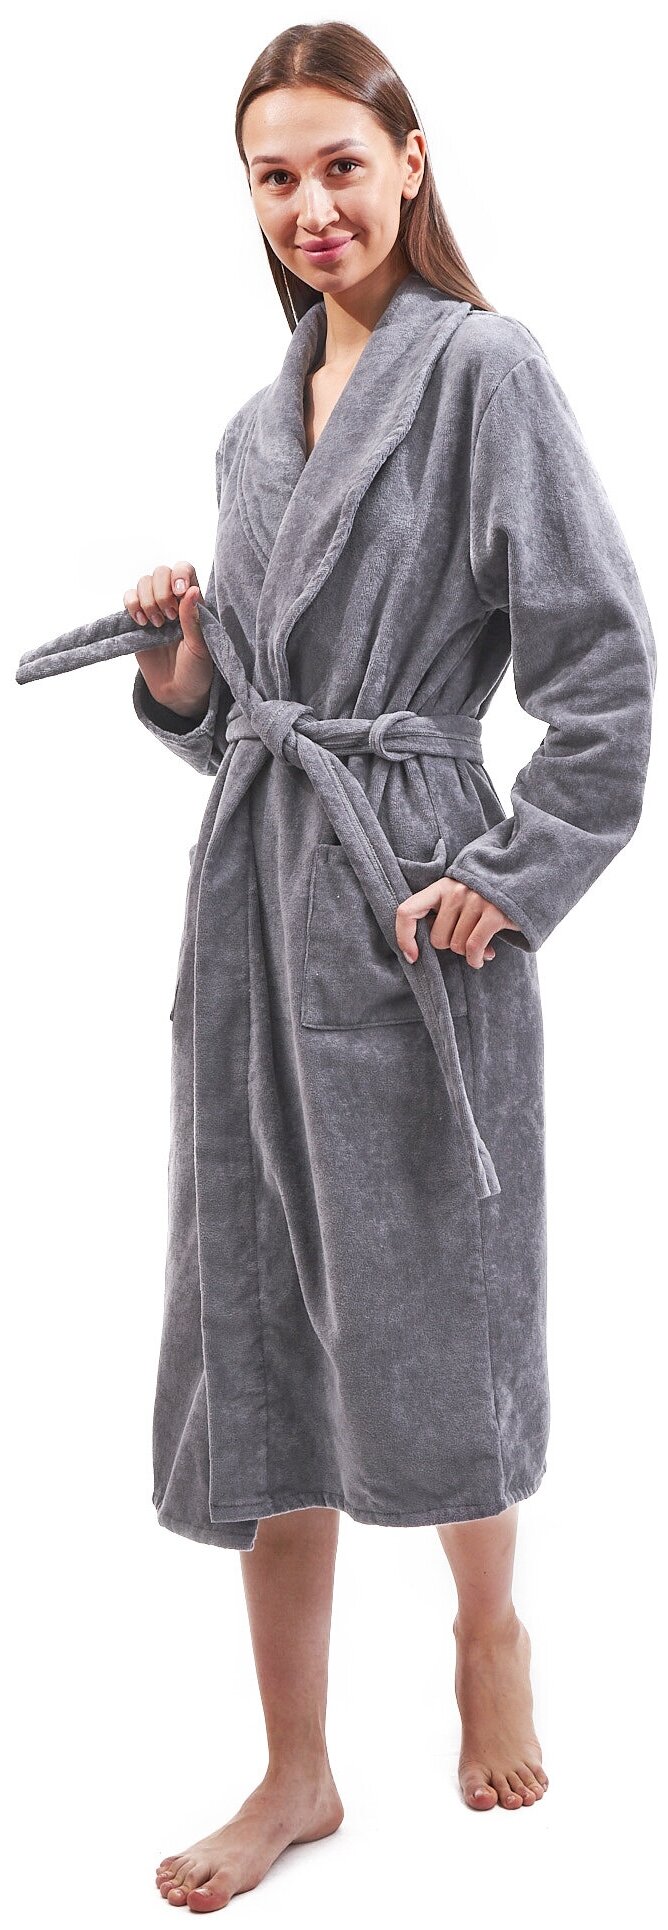 Велюровый женский халат серый Elintale (серый), 56-58 - фотография № 1